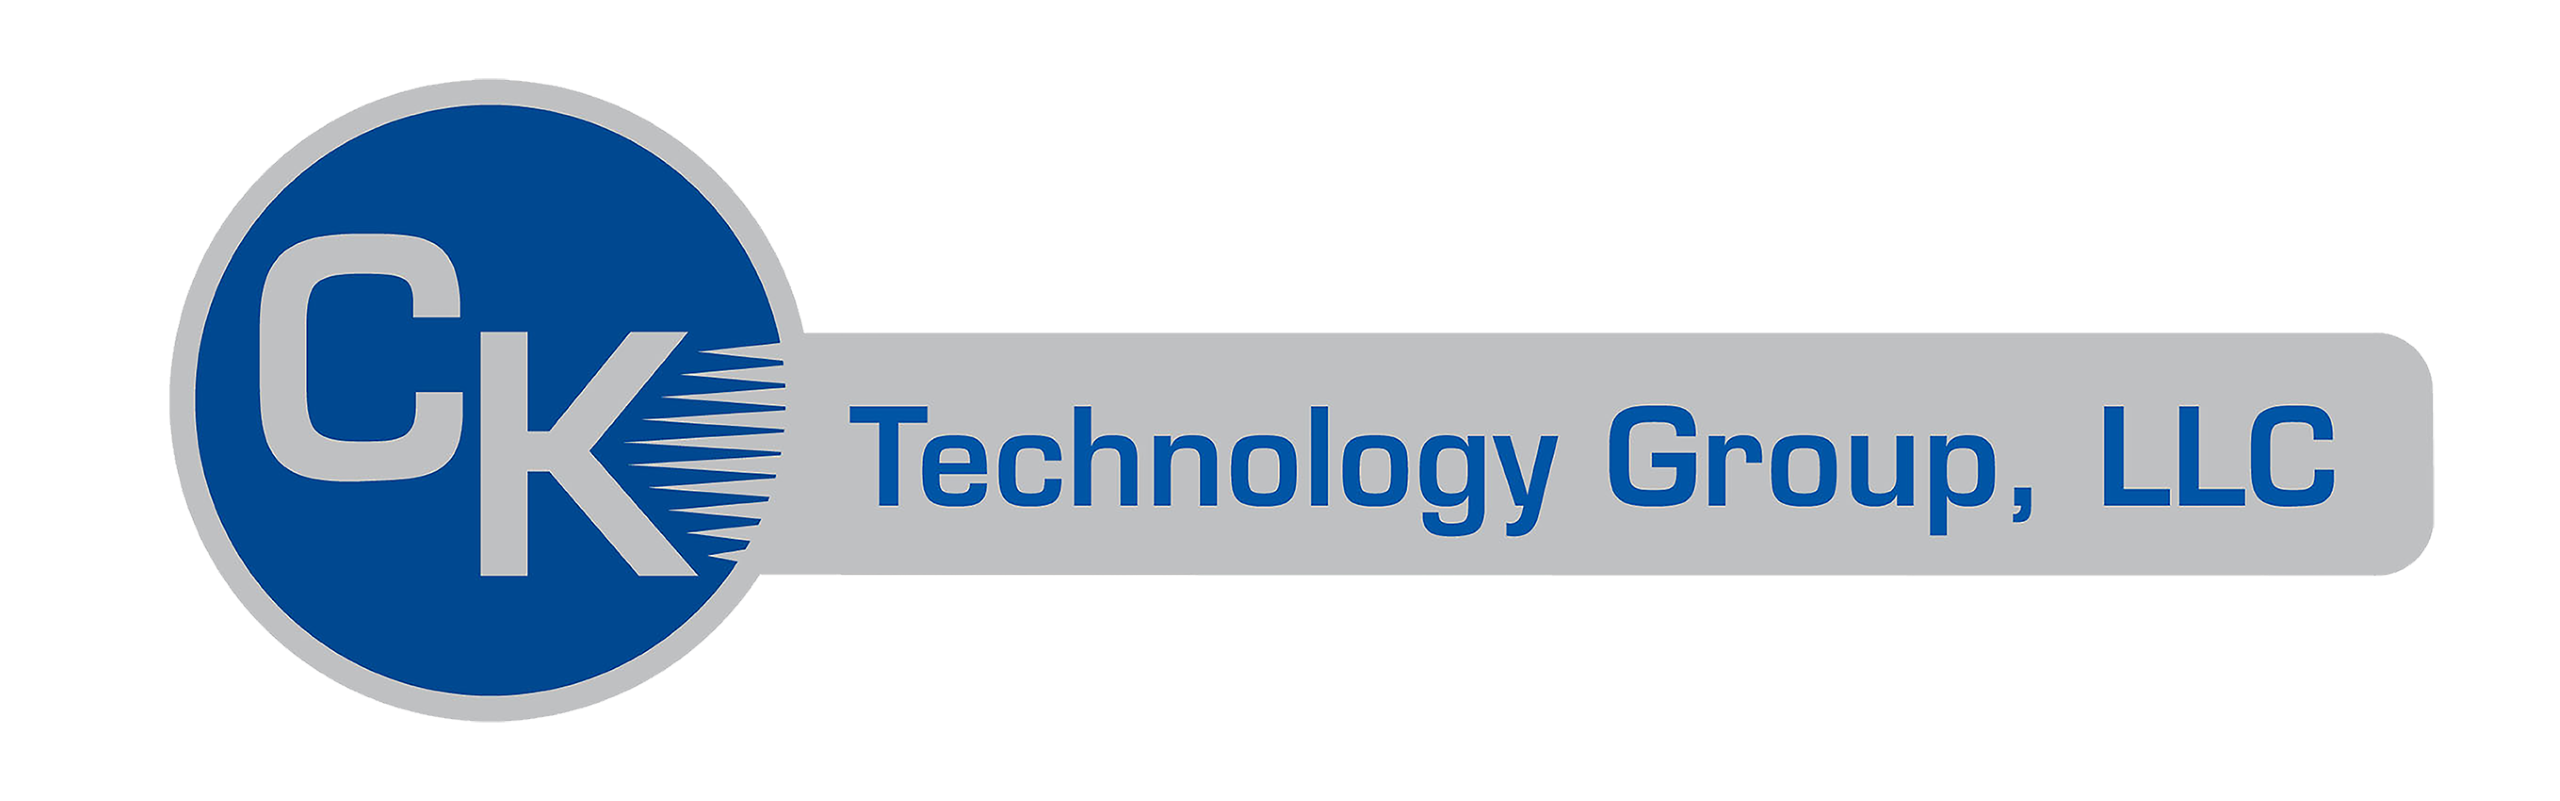 CK Technology Group, LLC Logo